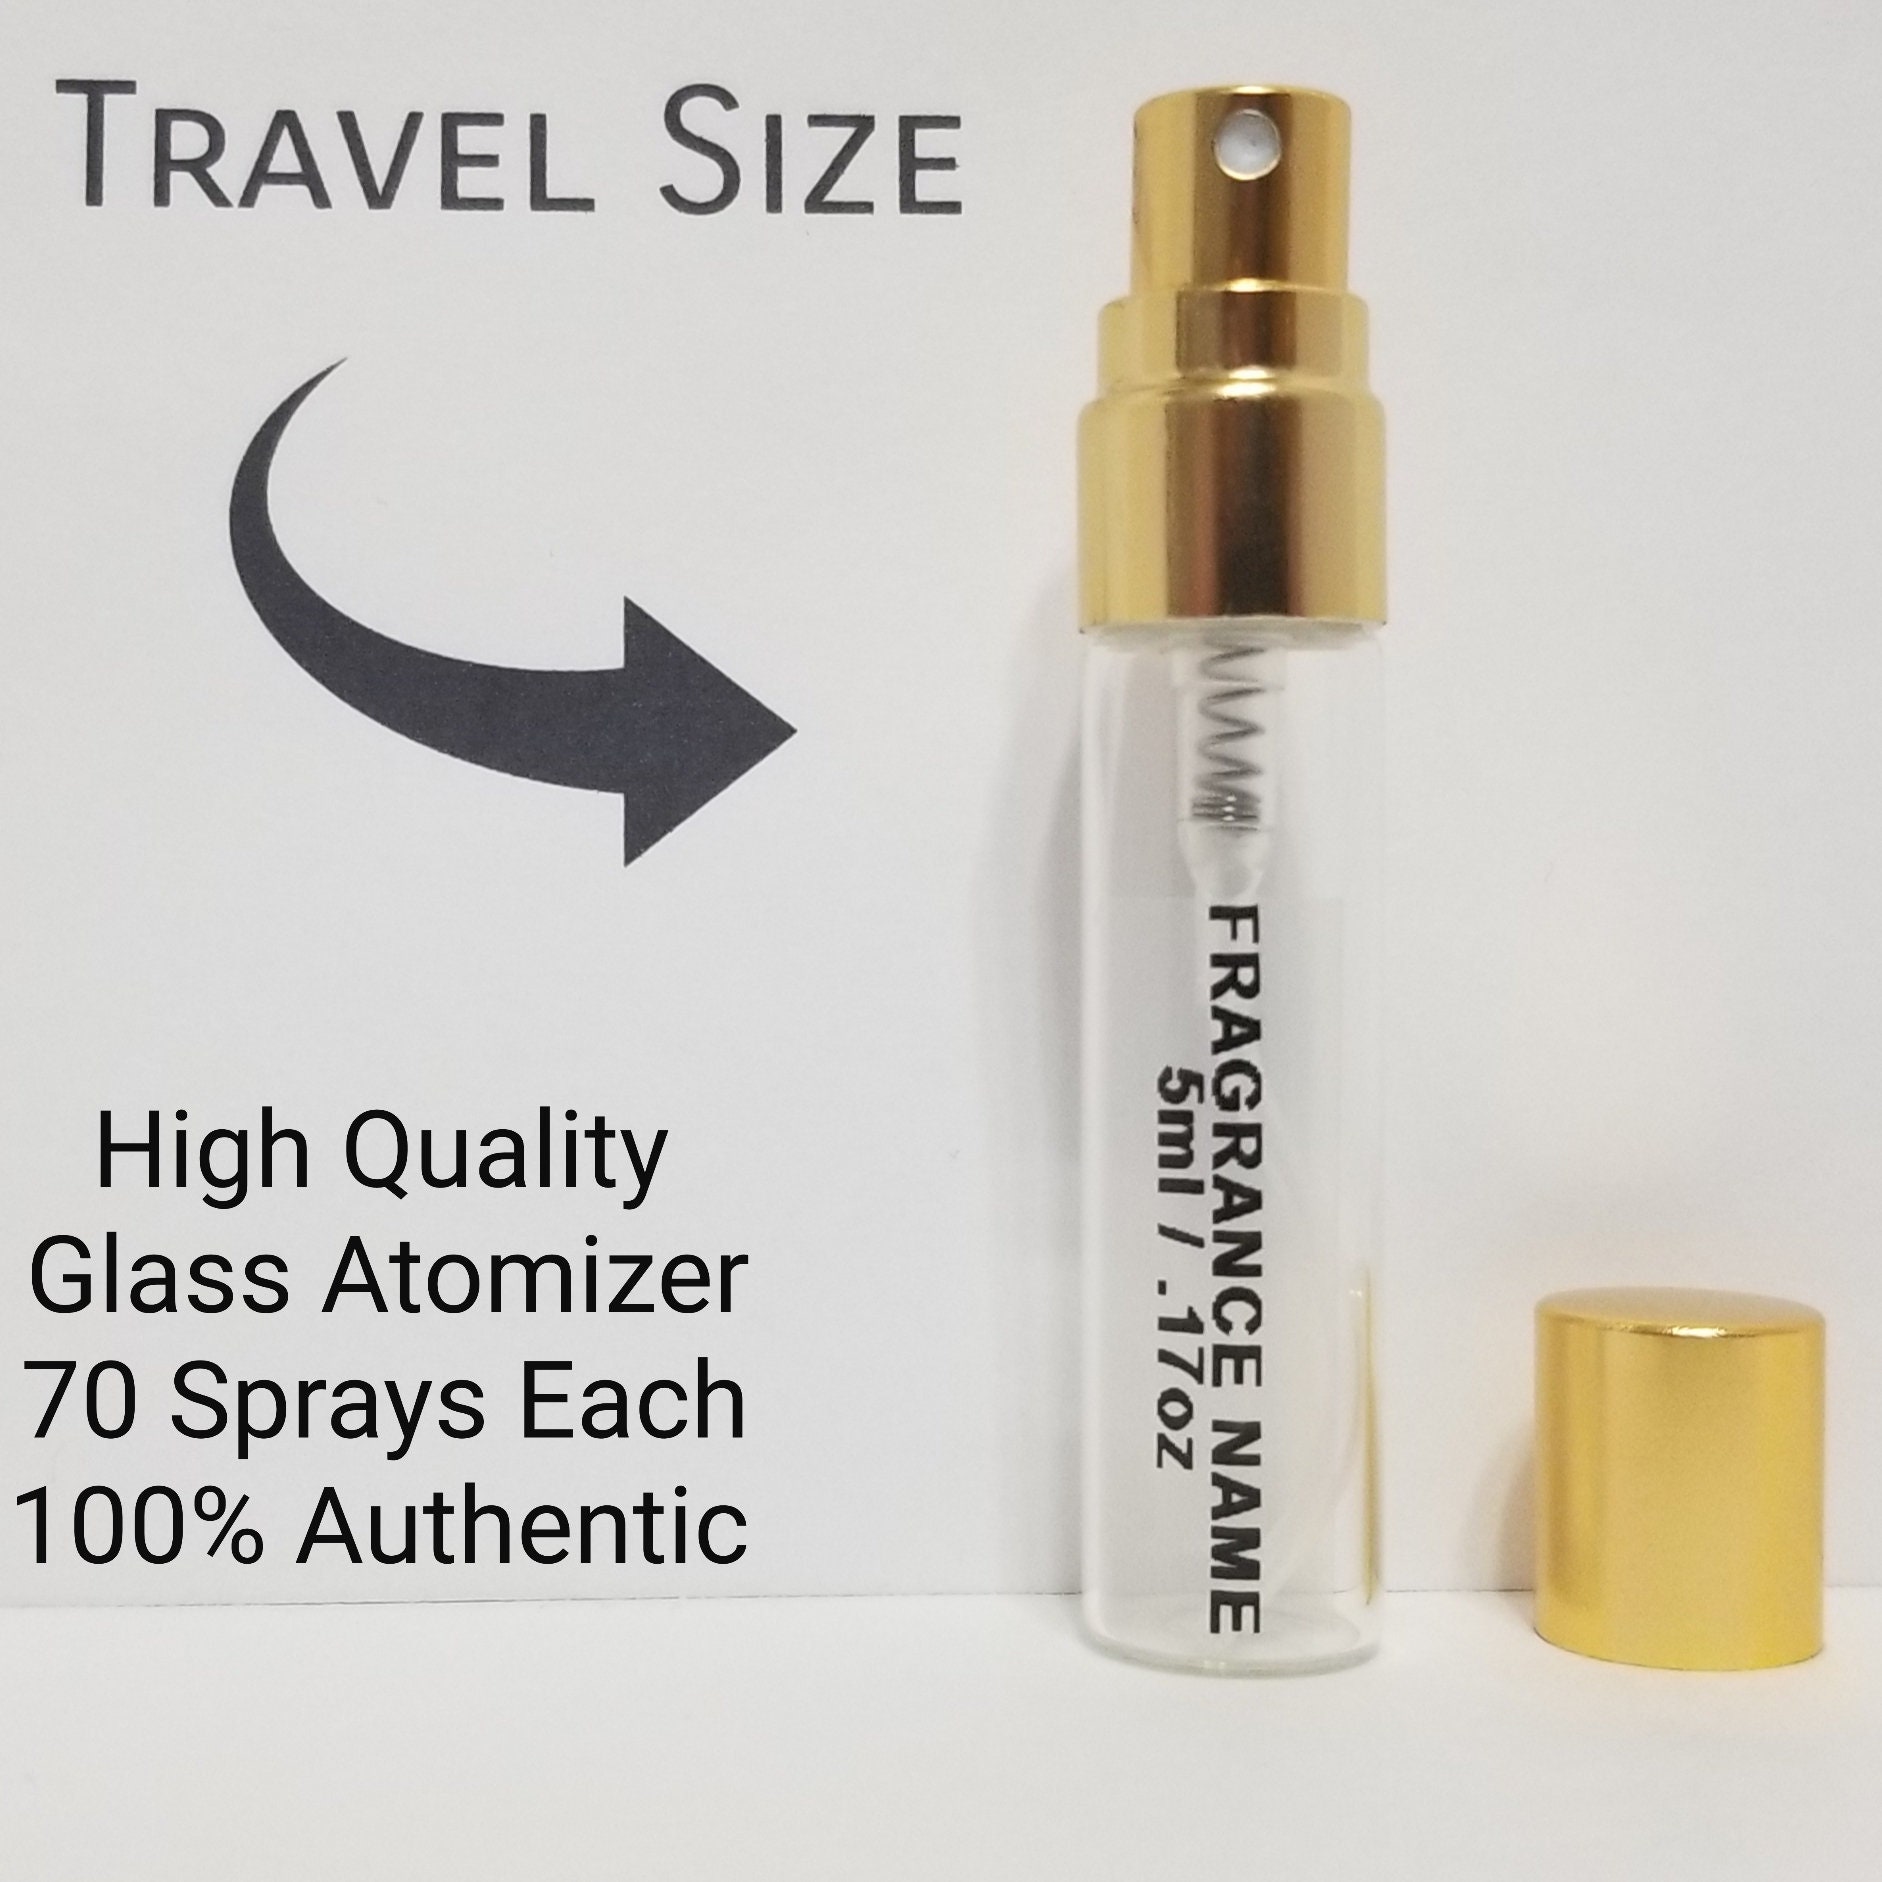 GOLD COUTURE Edp Spray Perfume for Women 5ml / .17oz 